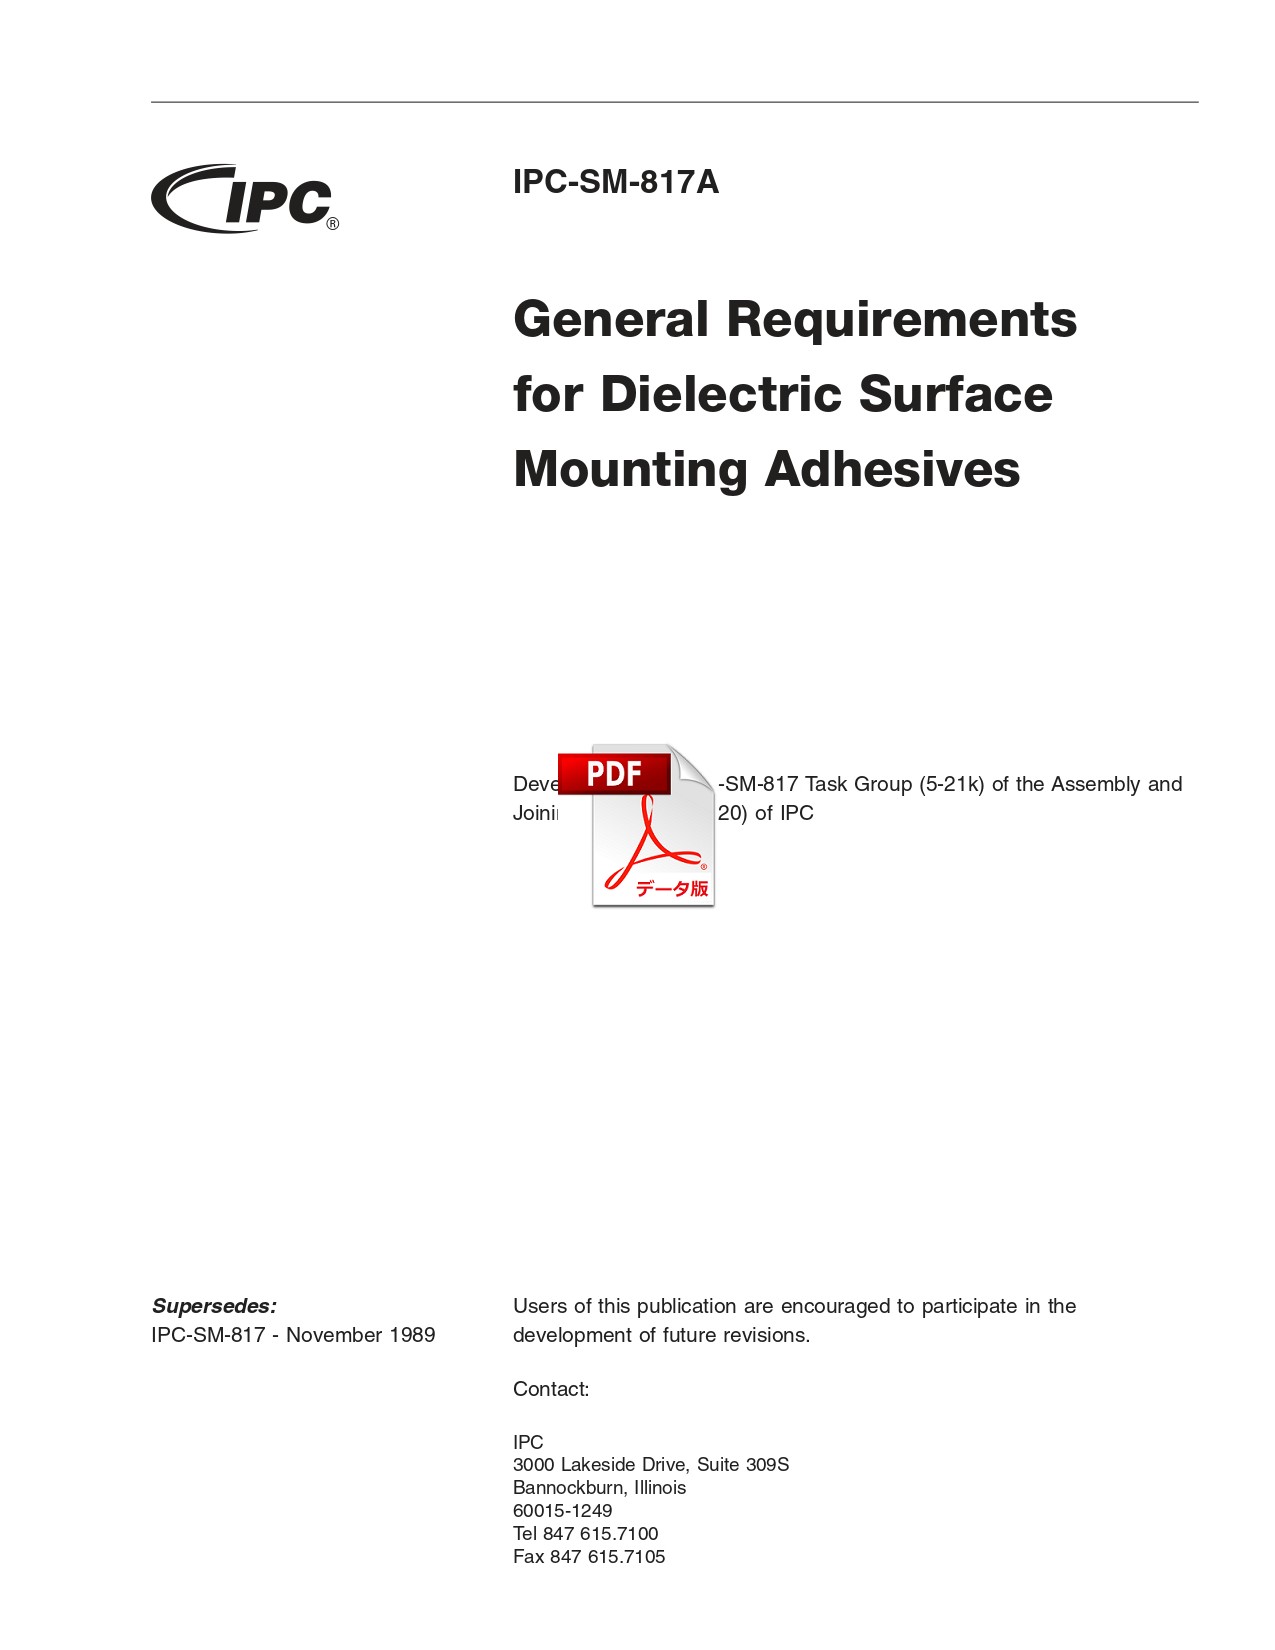 ［英語版］IPC-SM-817A: General Requirements for Dielectric Surface Mount Adhesives